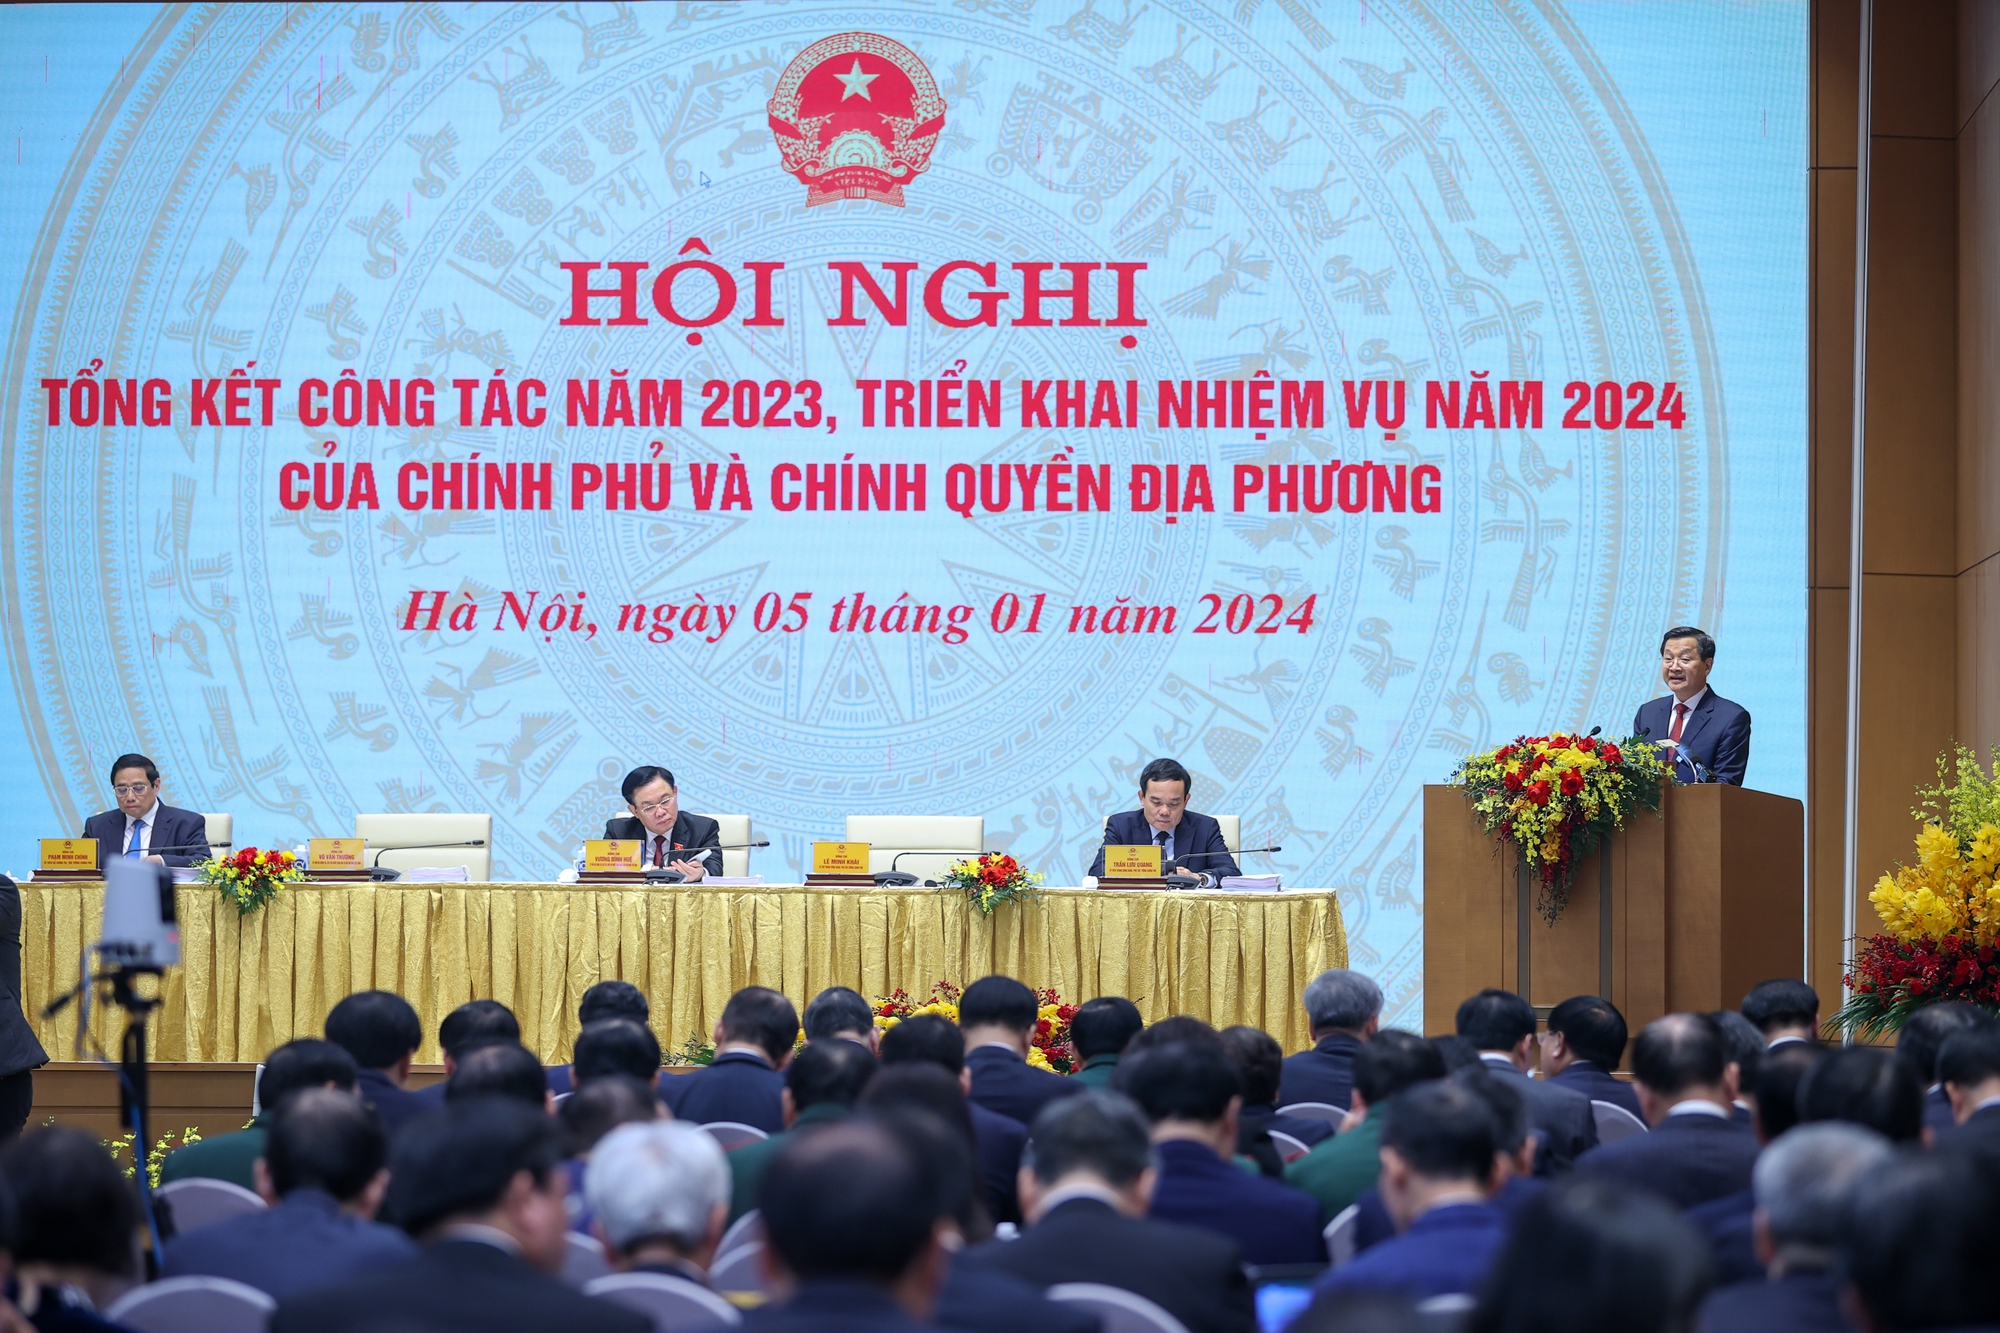 Kinh tế Việt Nam tiếp tục là điểm sáng; toàn bộ chỉ tiêu về xã hội đều đạt và vượt mục tiêu đề ra- Ảnh 3.